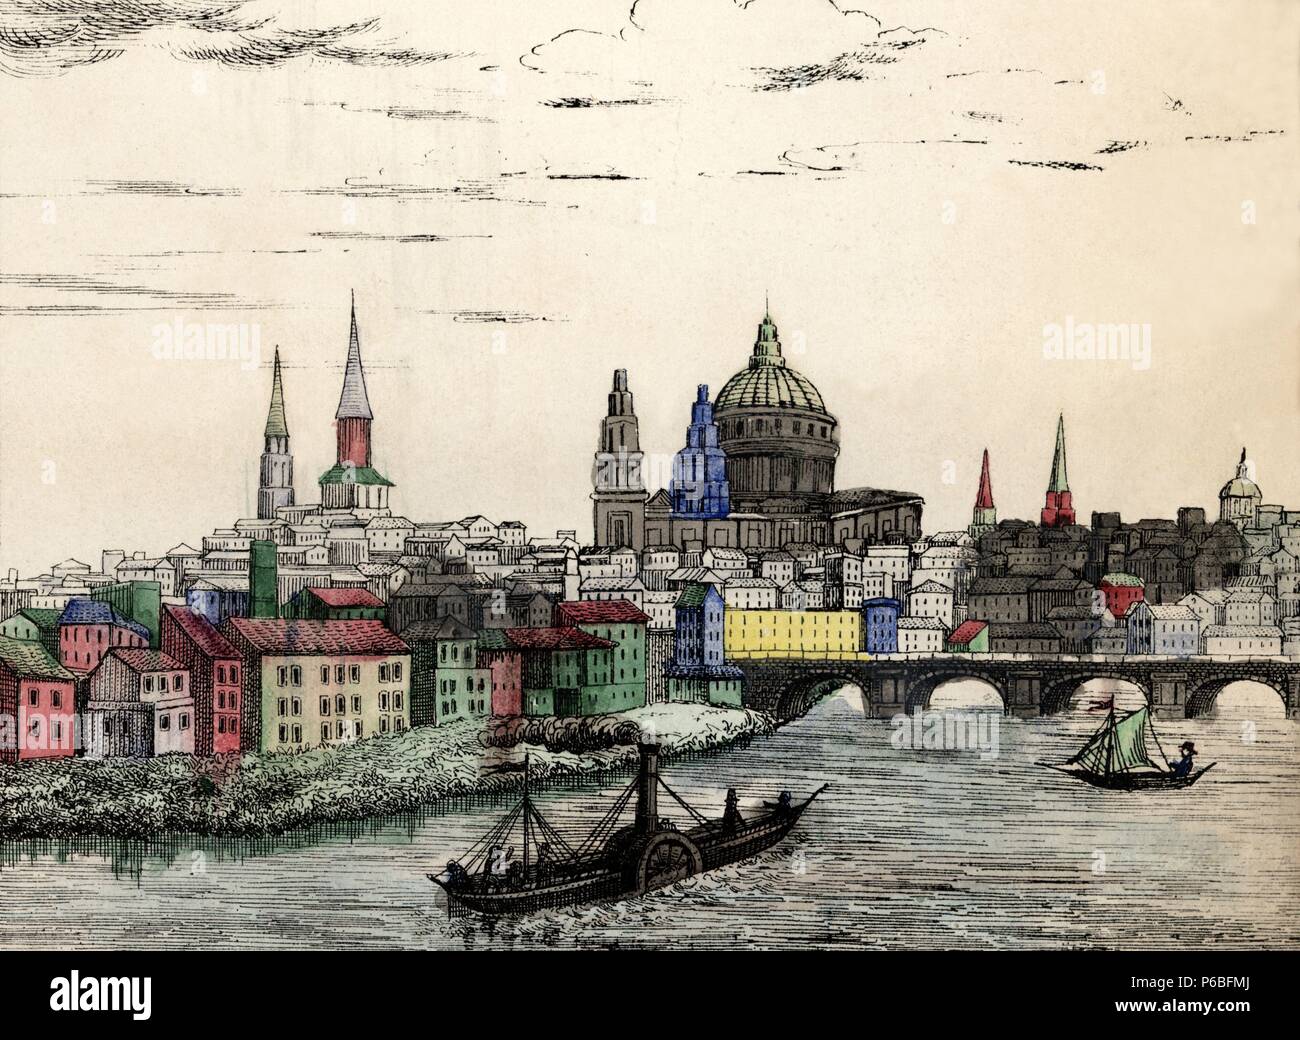 Inglaterra. Vista de Londres. Grabado popular alemán coloreado a mano. Siglo XIX. Stock Photo